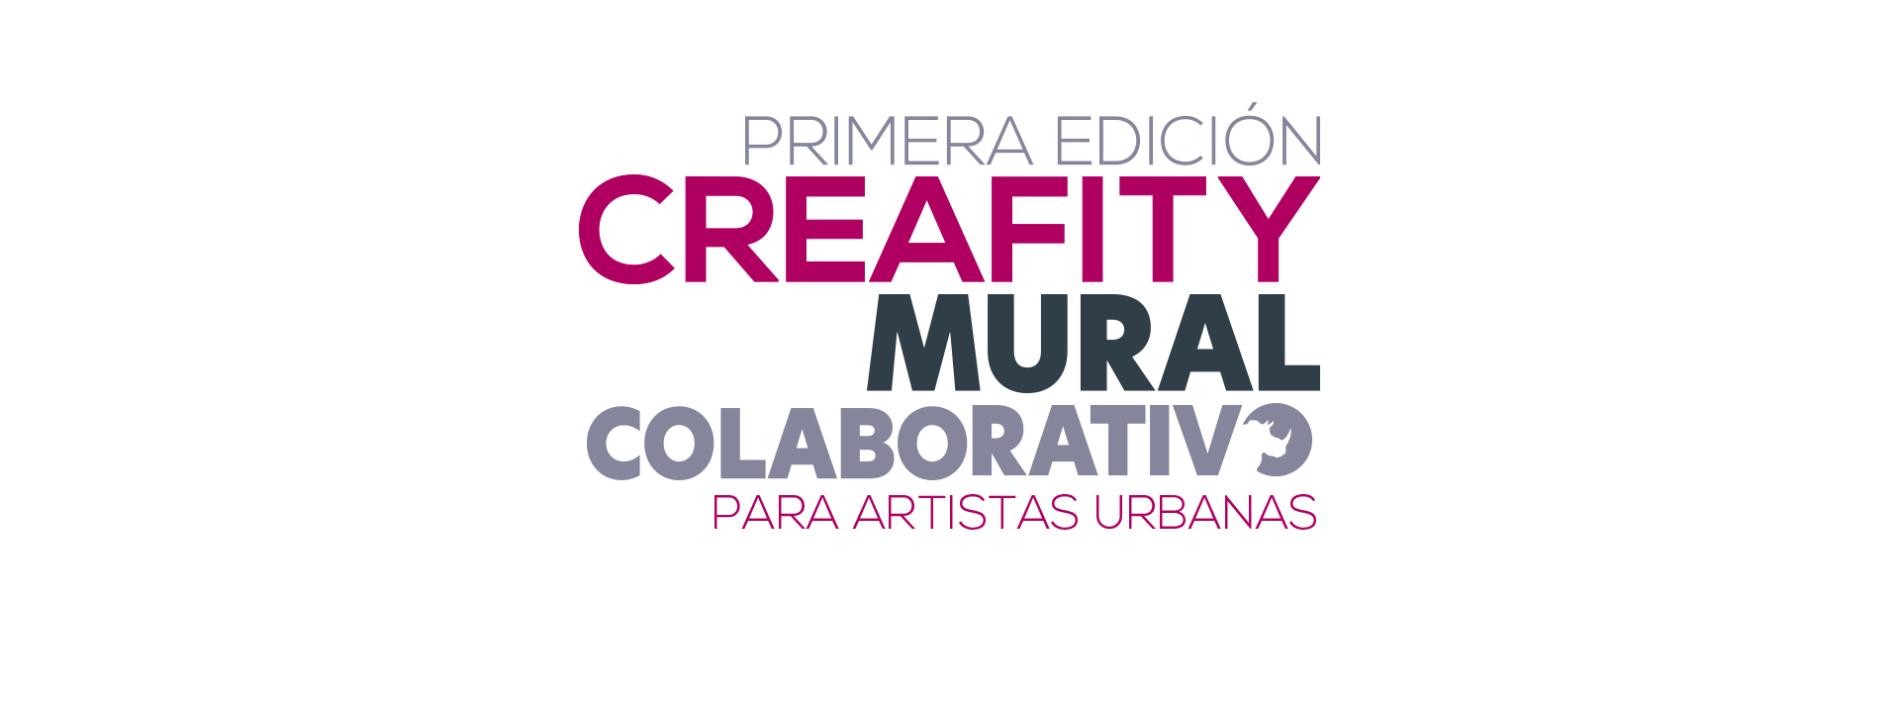 Creafity mural colaborativo